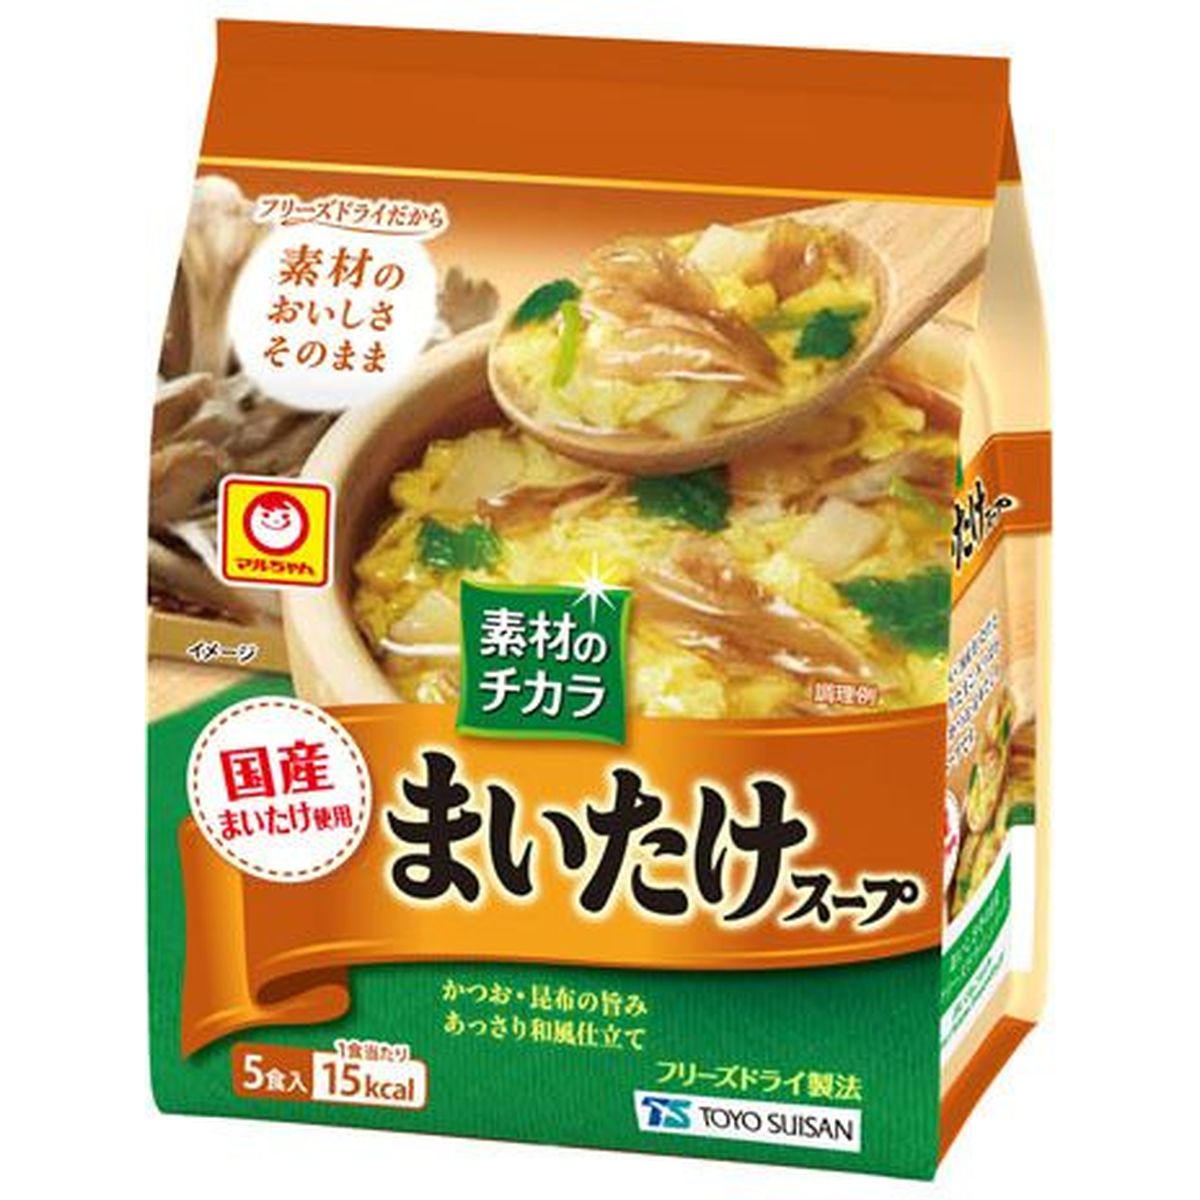 【6個入リ】マルチャン 素材ノチカラマイタケスープ 4.3gX5